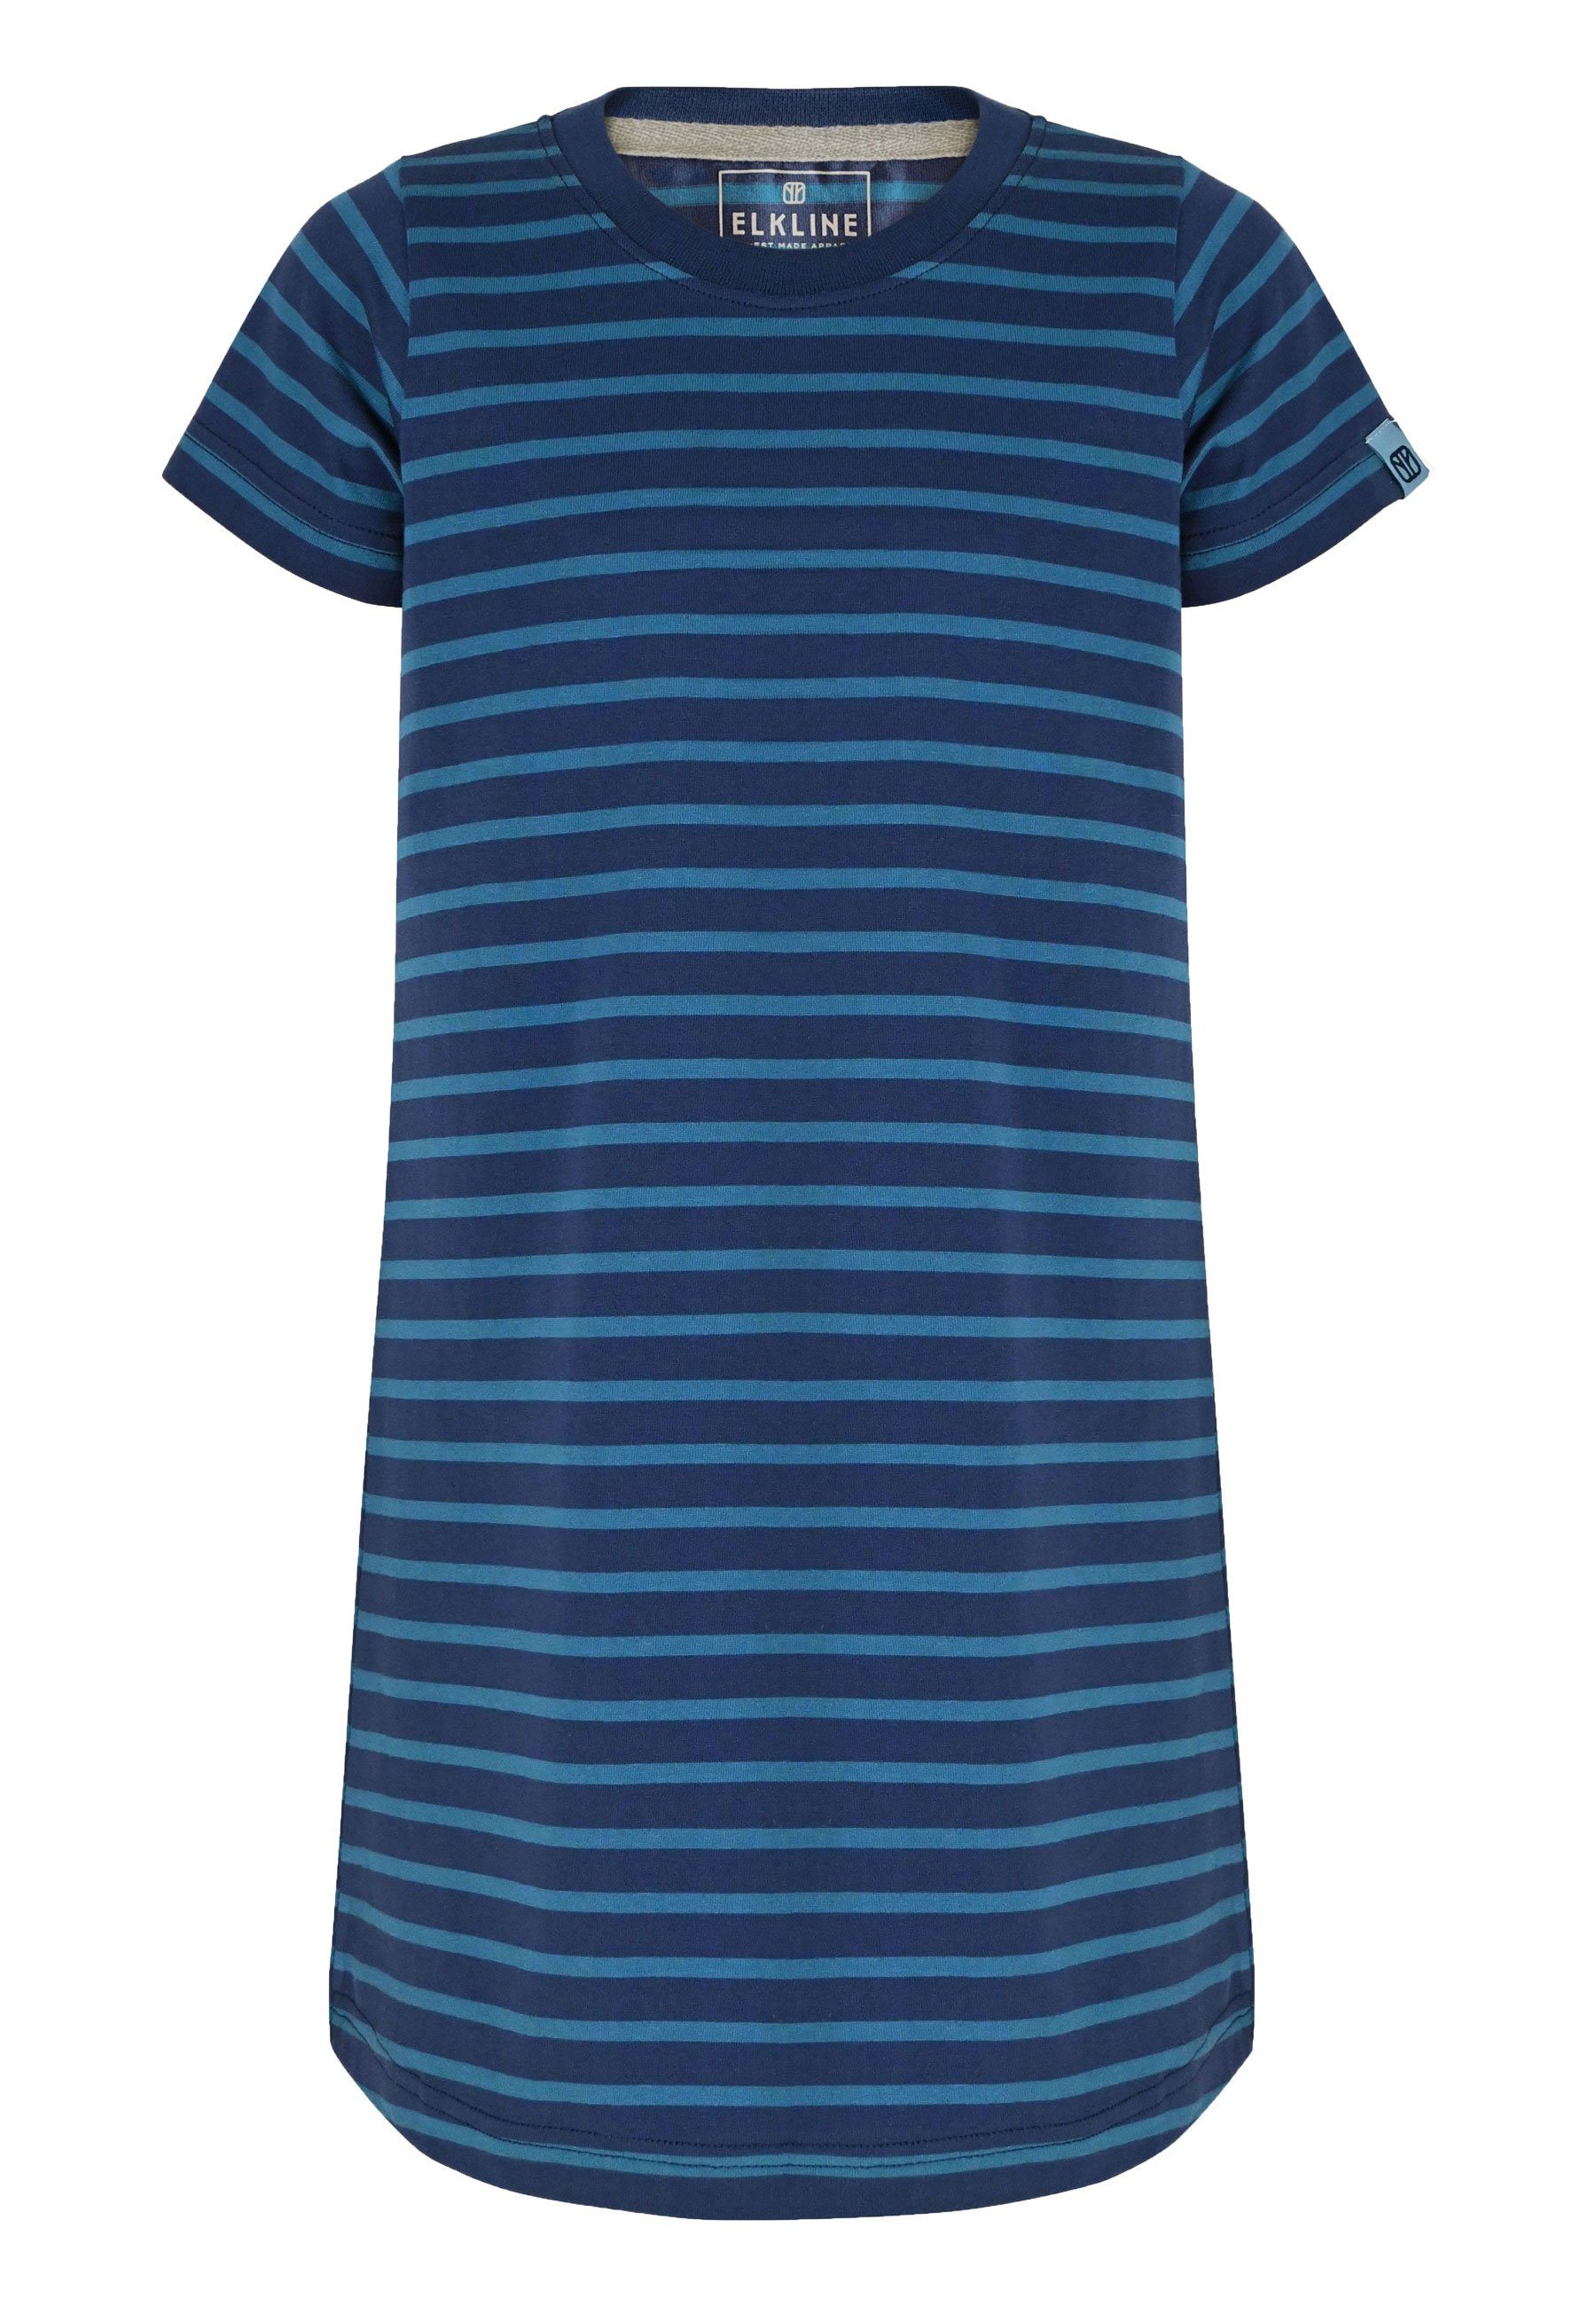 Elkline Sommerkleid - Shirt-Kleid darkblue bluecoral Streifen Basic Hanna